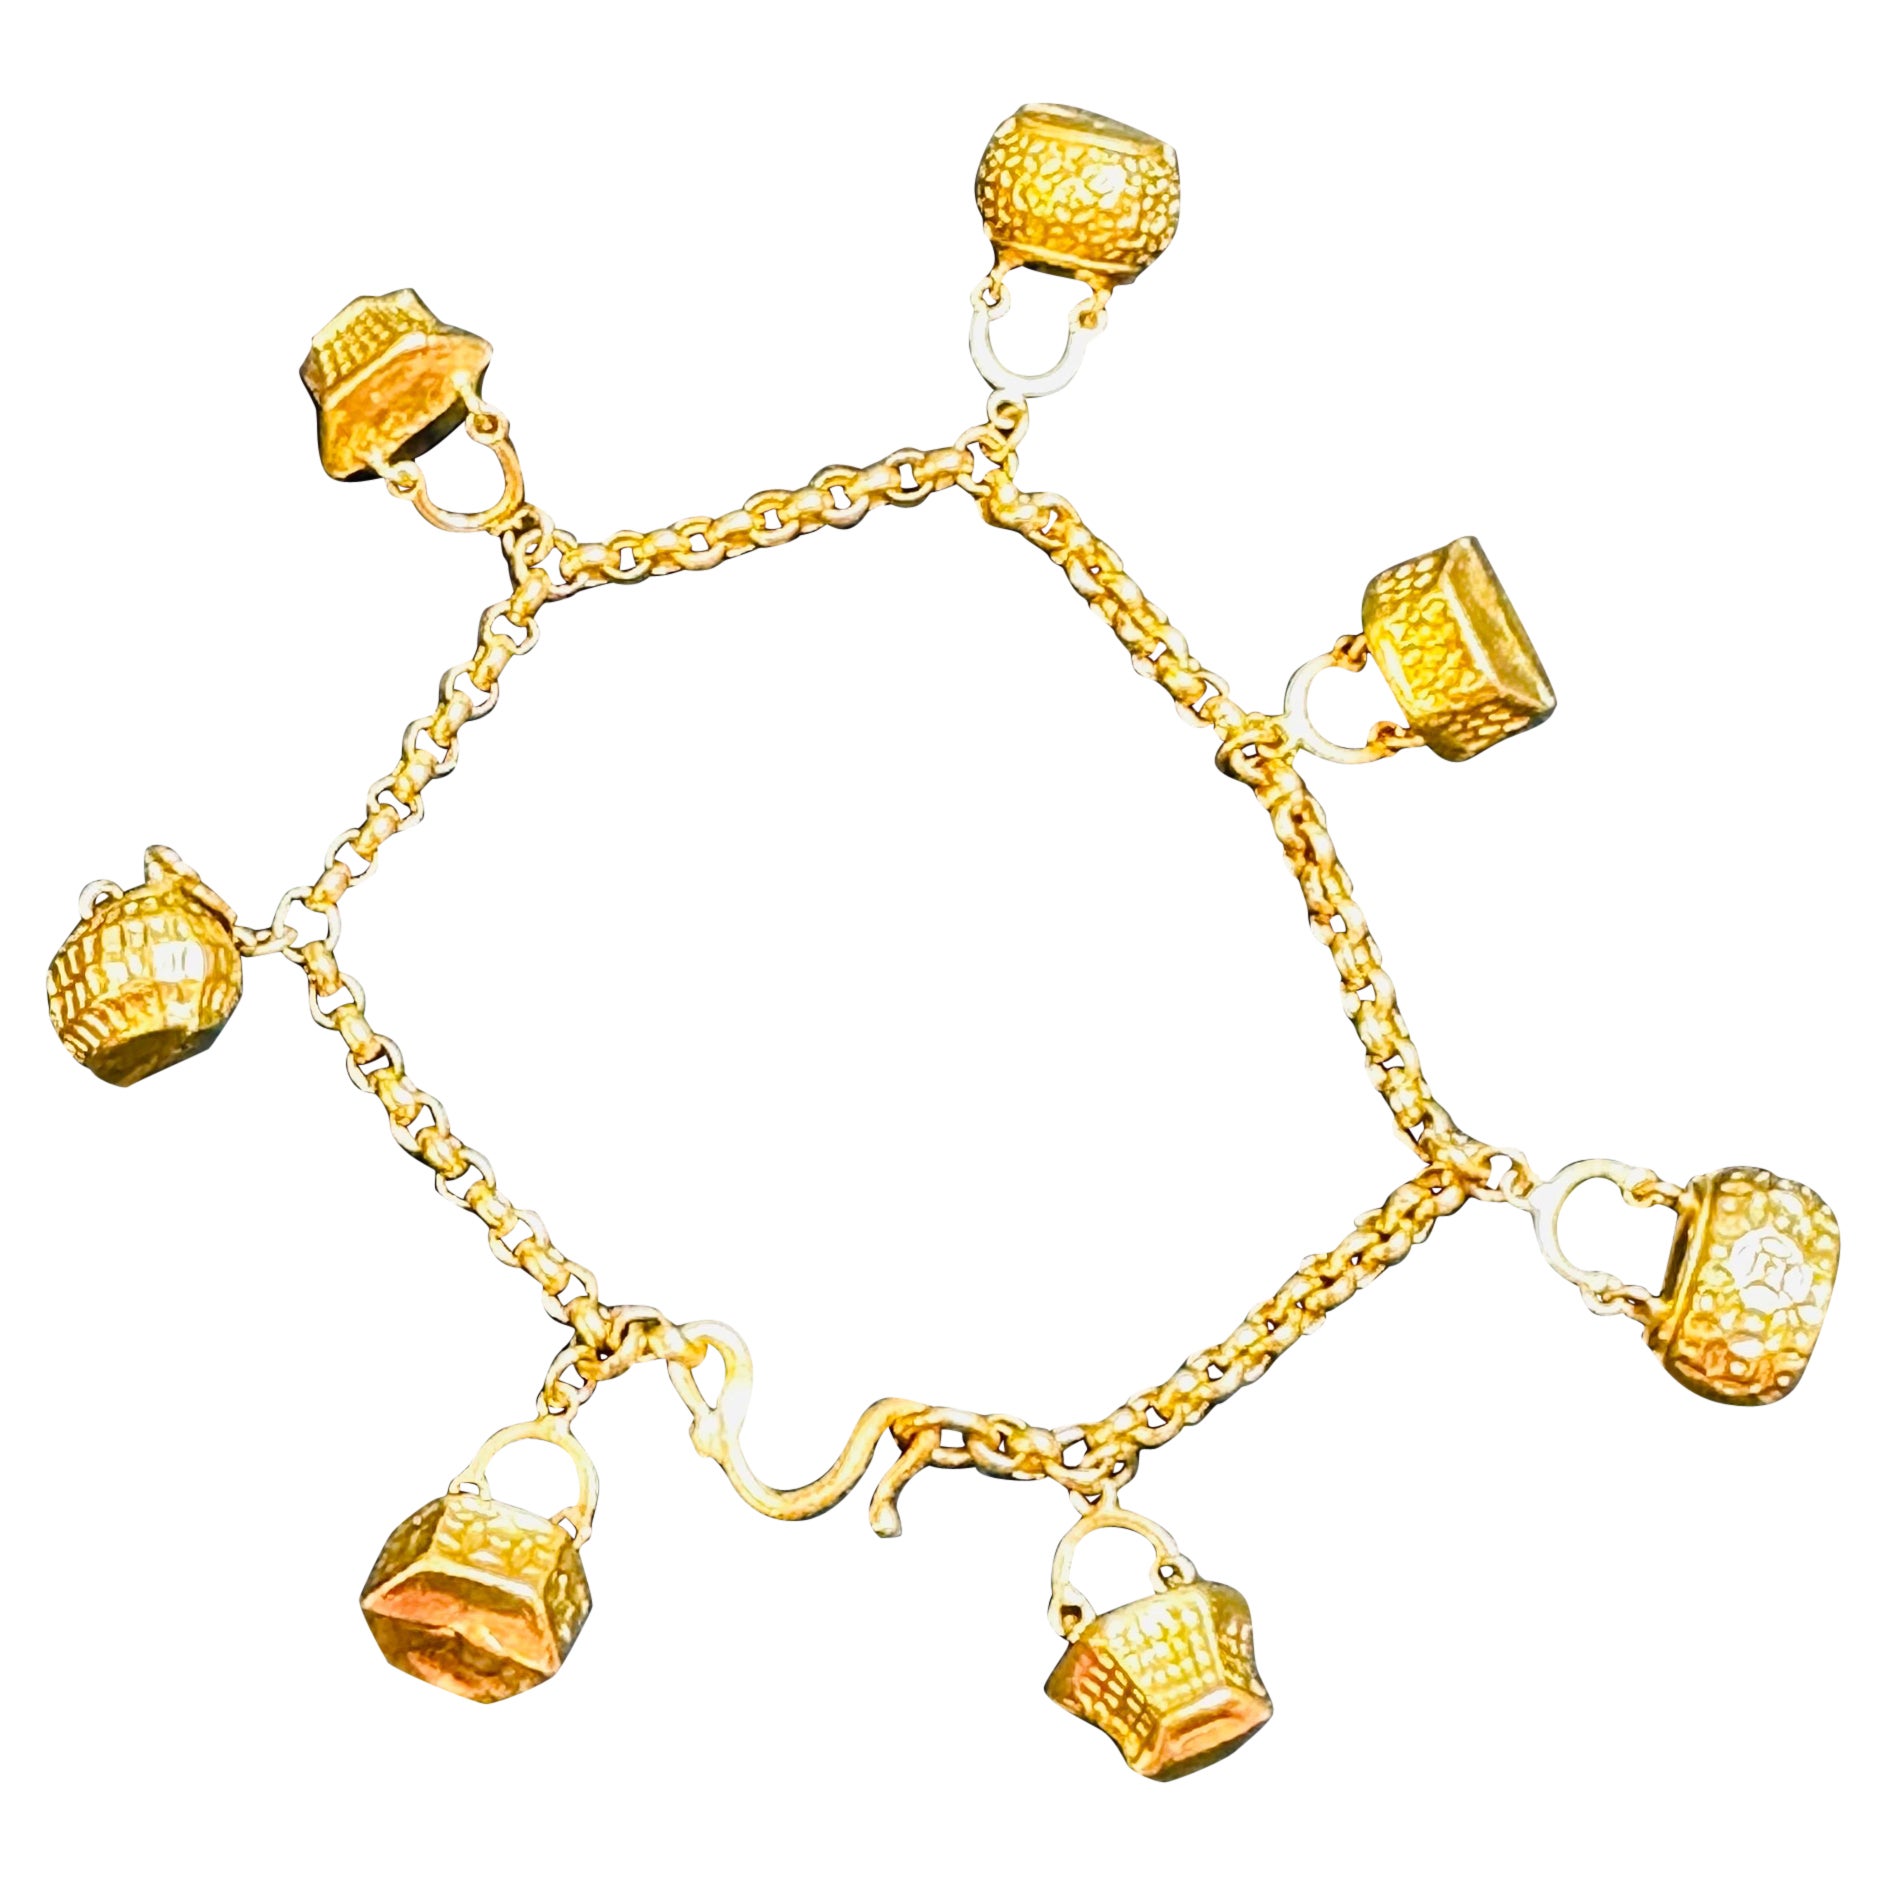 24 Karat reines Gelbgold 15,5 Gm Charm Armband mit 7 Korb Anhängern